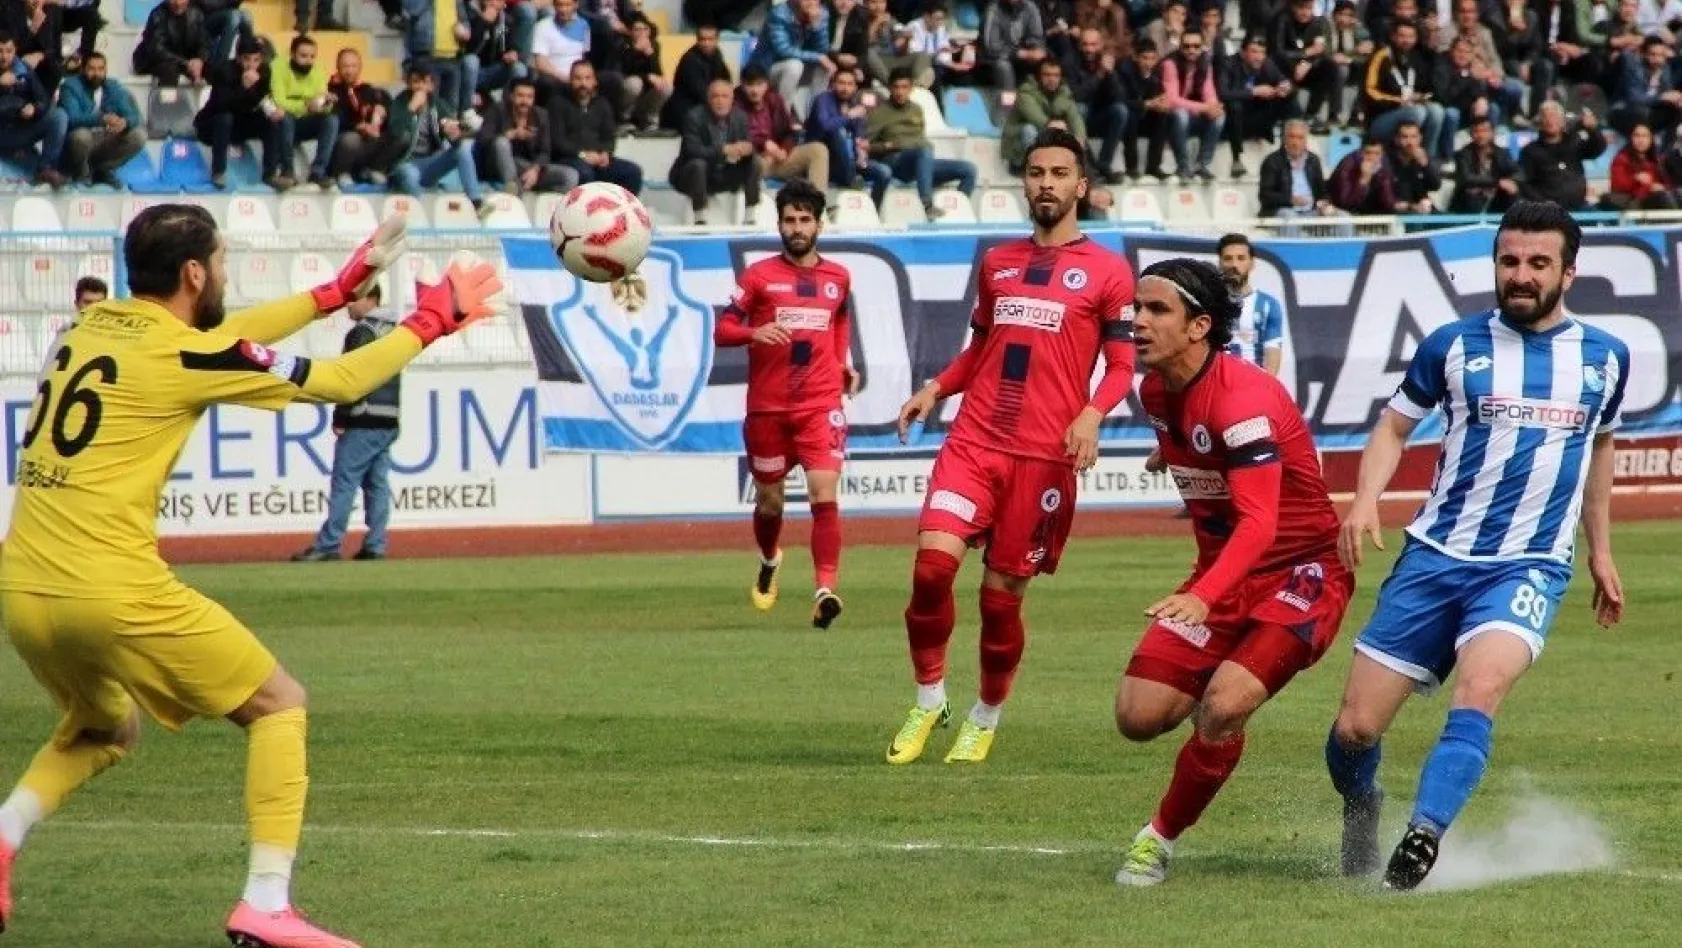 B.B. Erzurumspor: 0 Fethiyespor: 0
